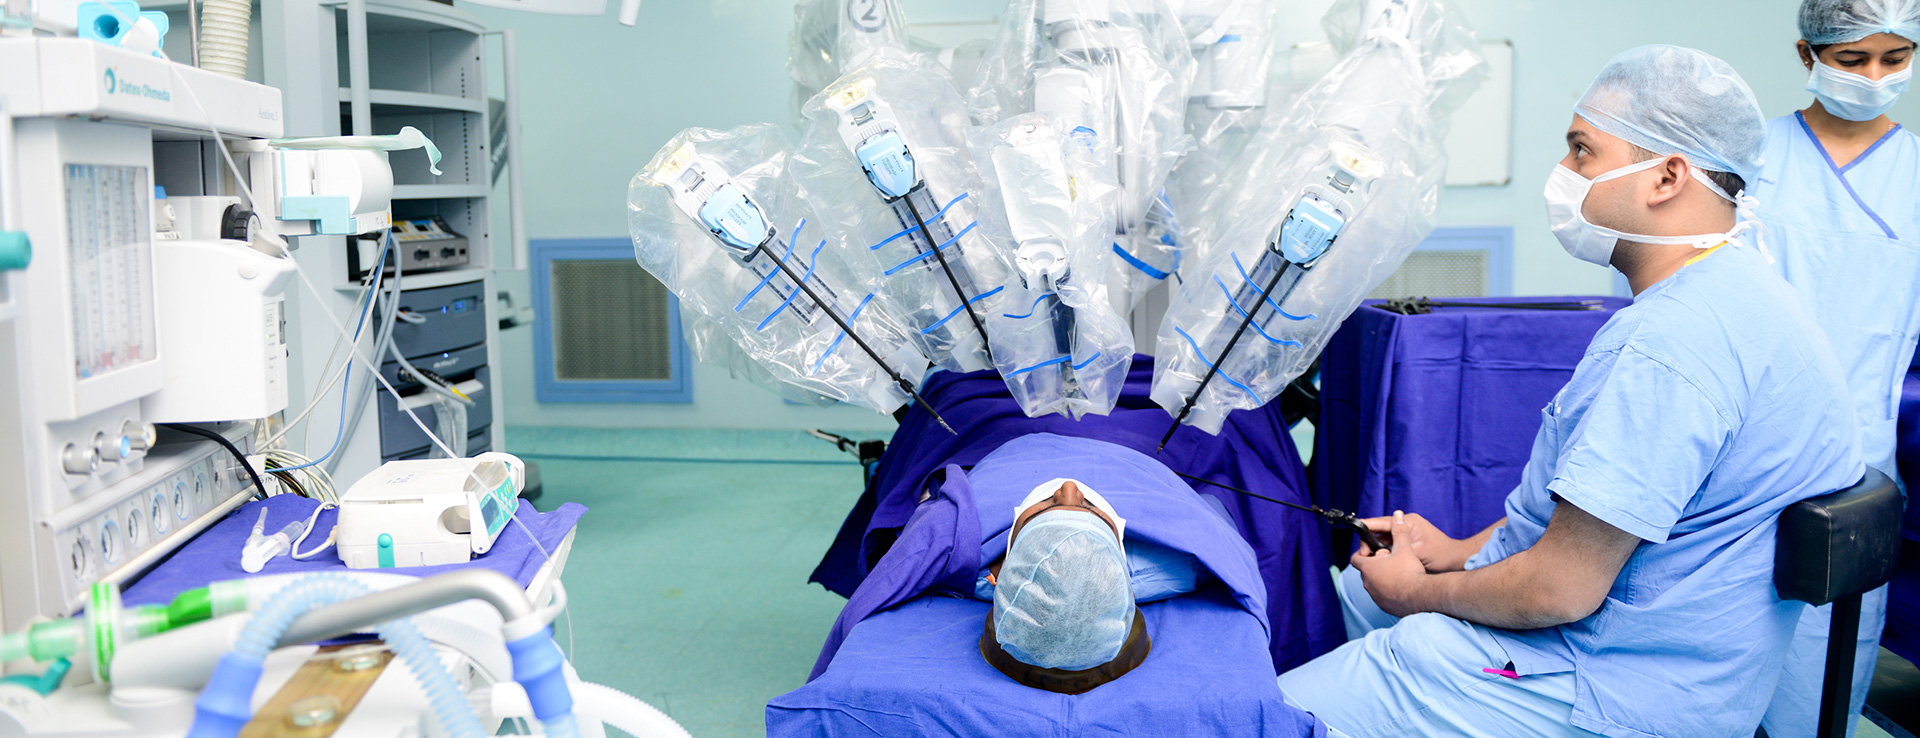 Robotic Gynecology Surgery in Mumbai